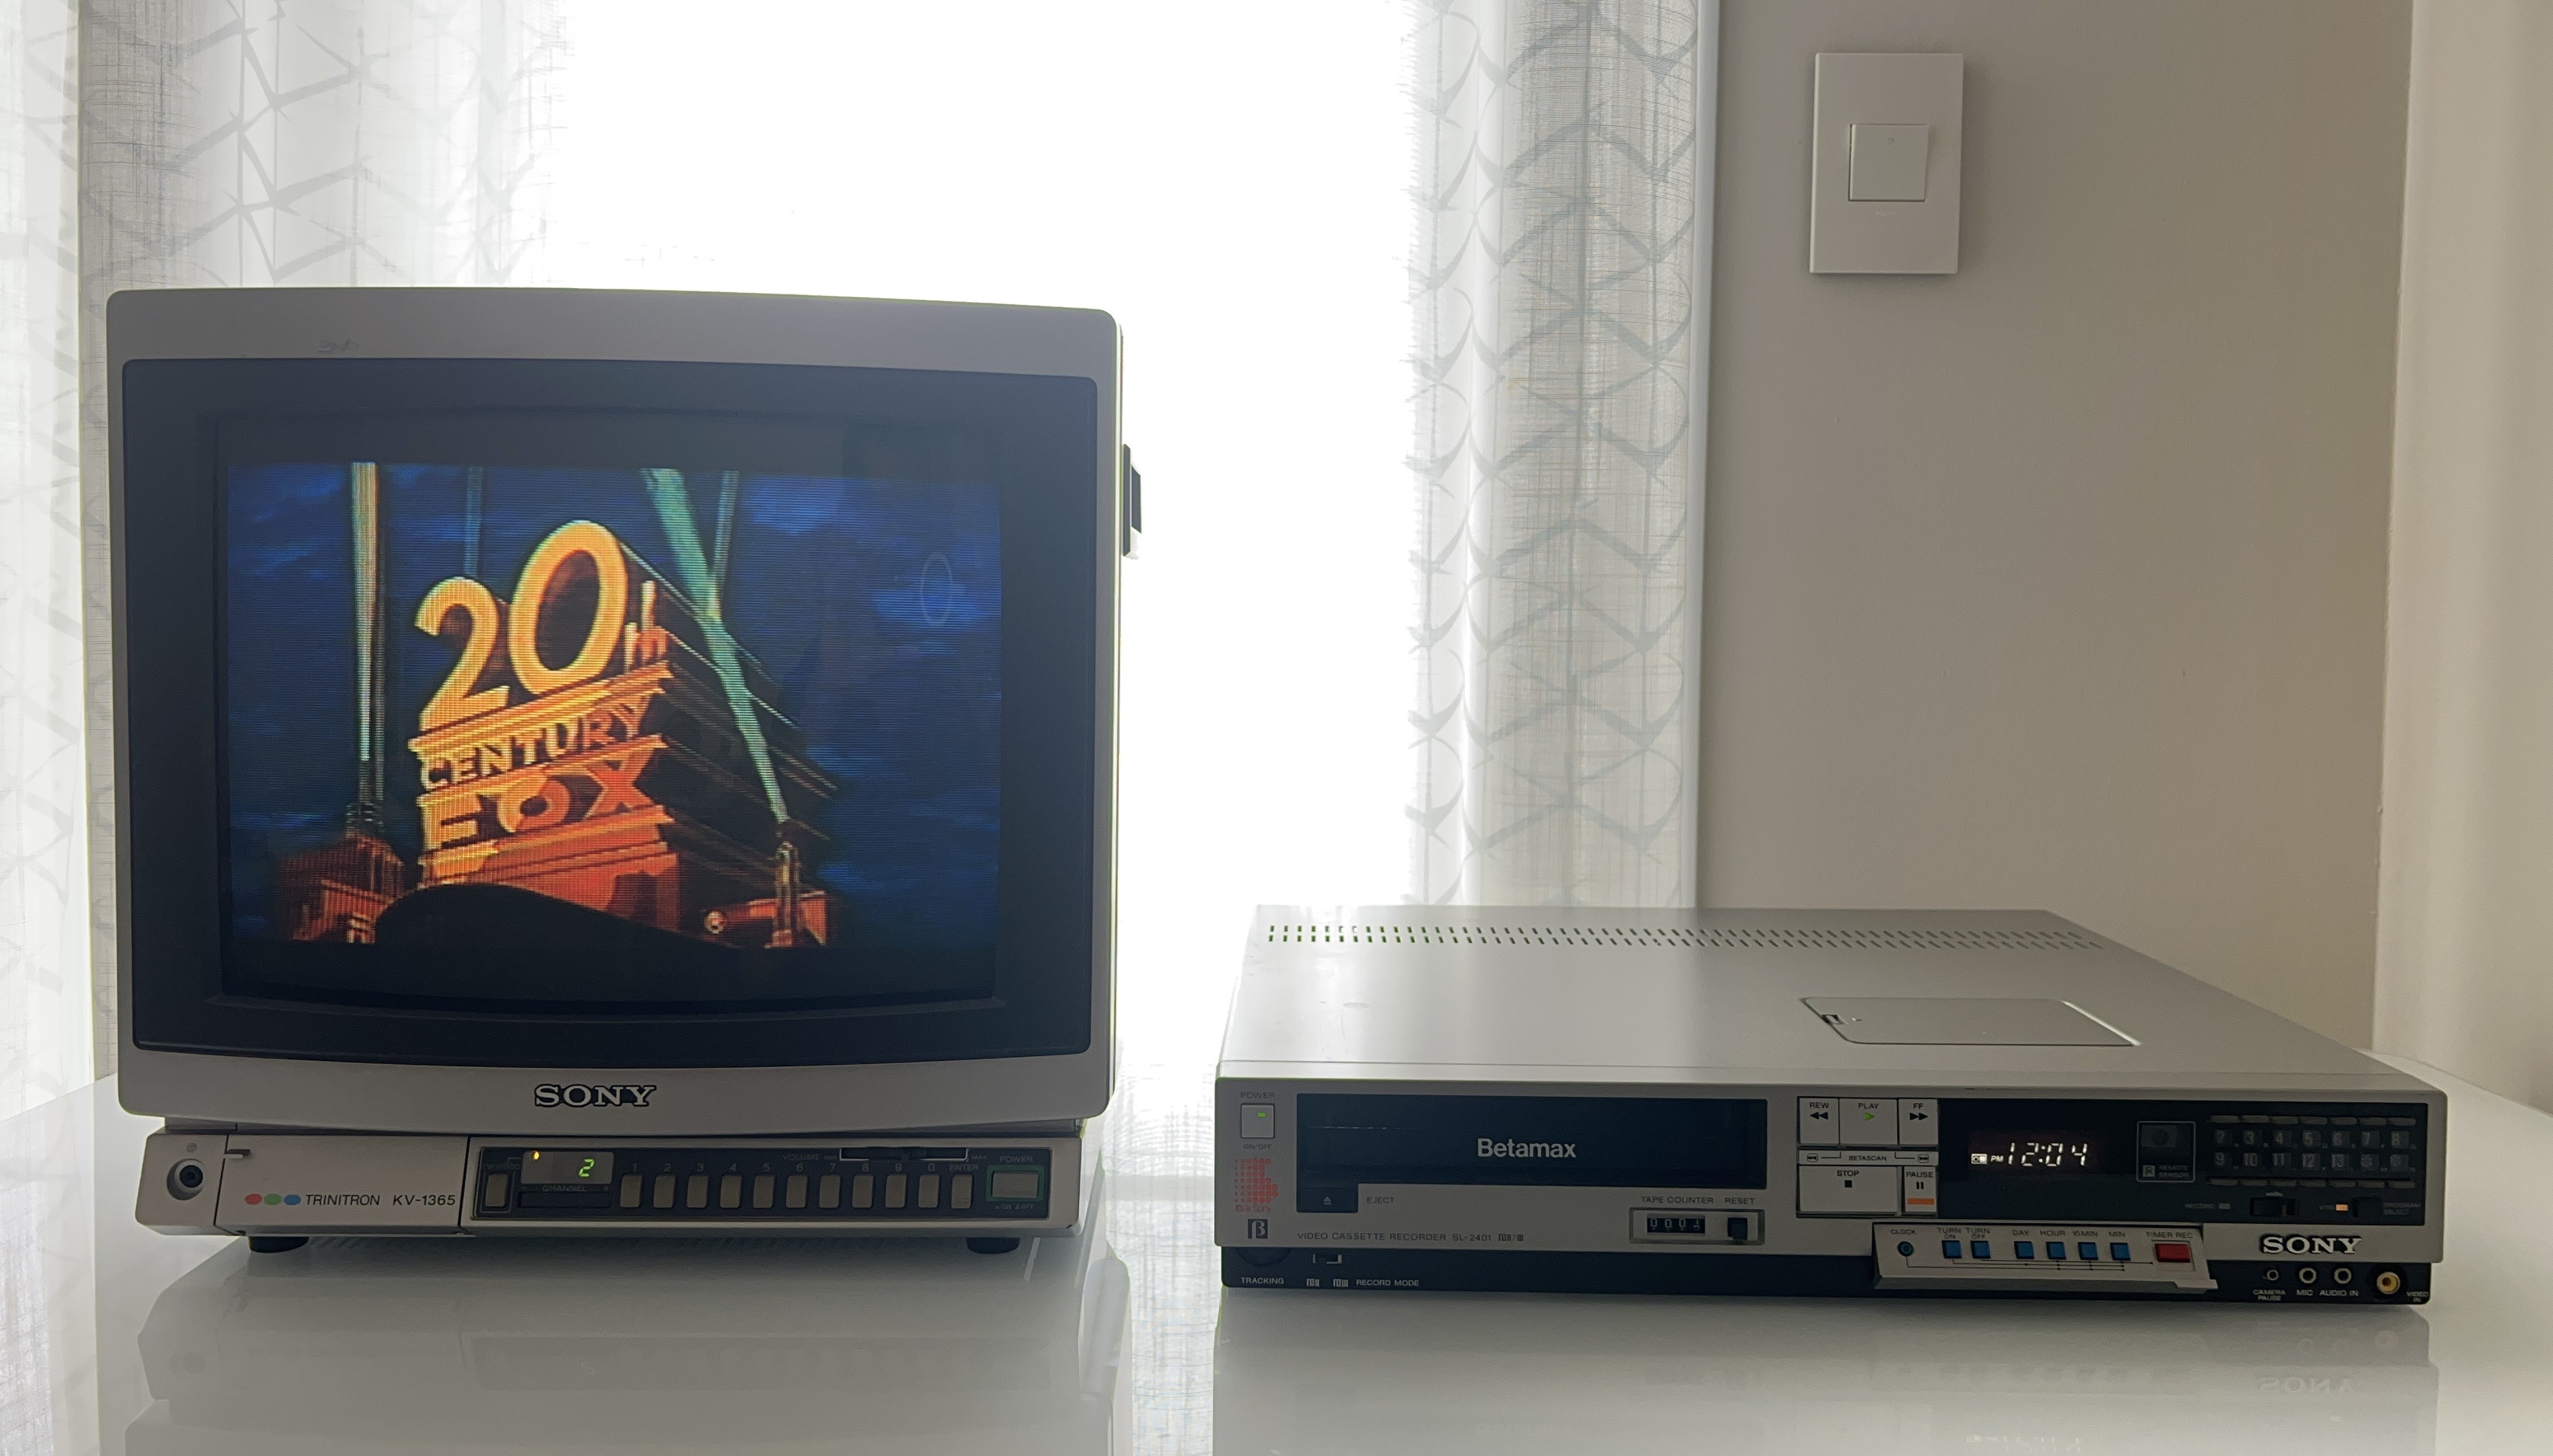 Sony SL-2401 Betamax VCR